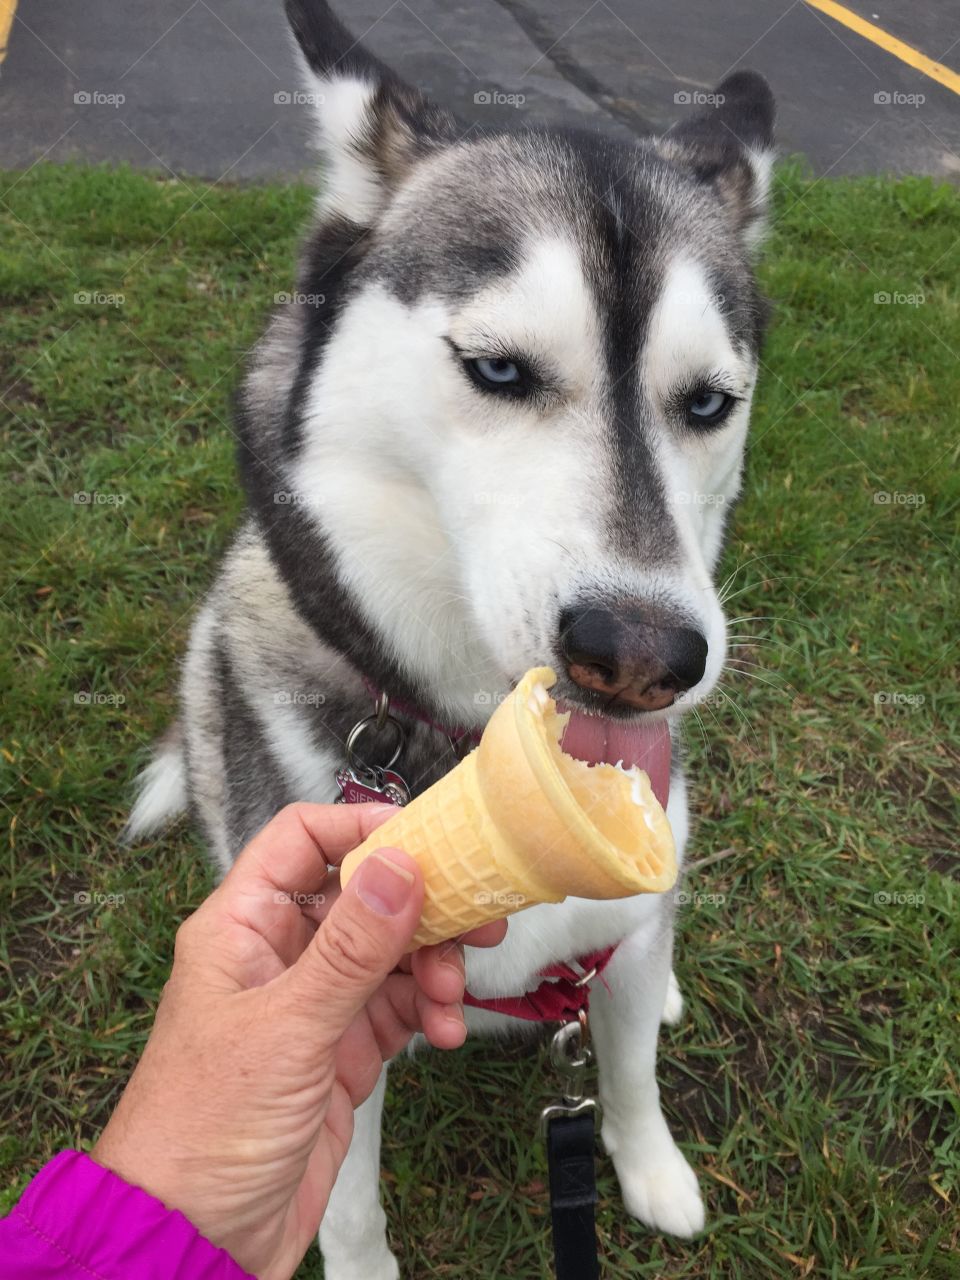 Person feeding ice cream cone to dog